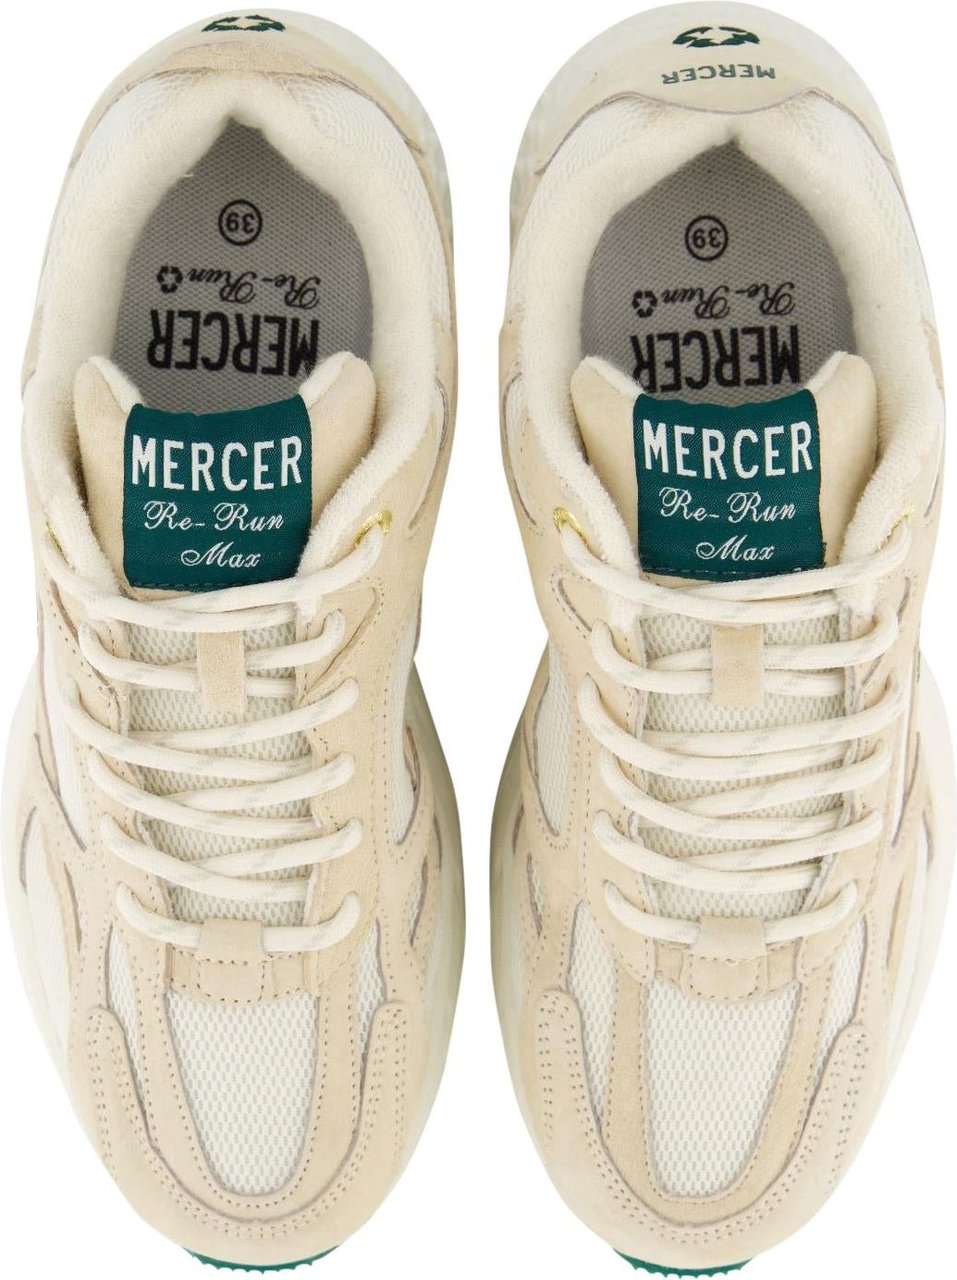 Mercer Amsterdam Mercer Schoenen Grijs maat 42 The re-run max sneakers grijs Grijs